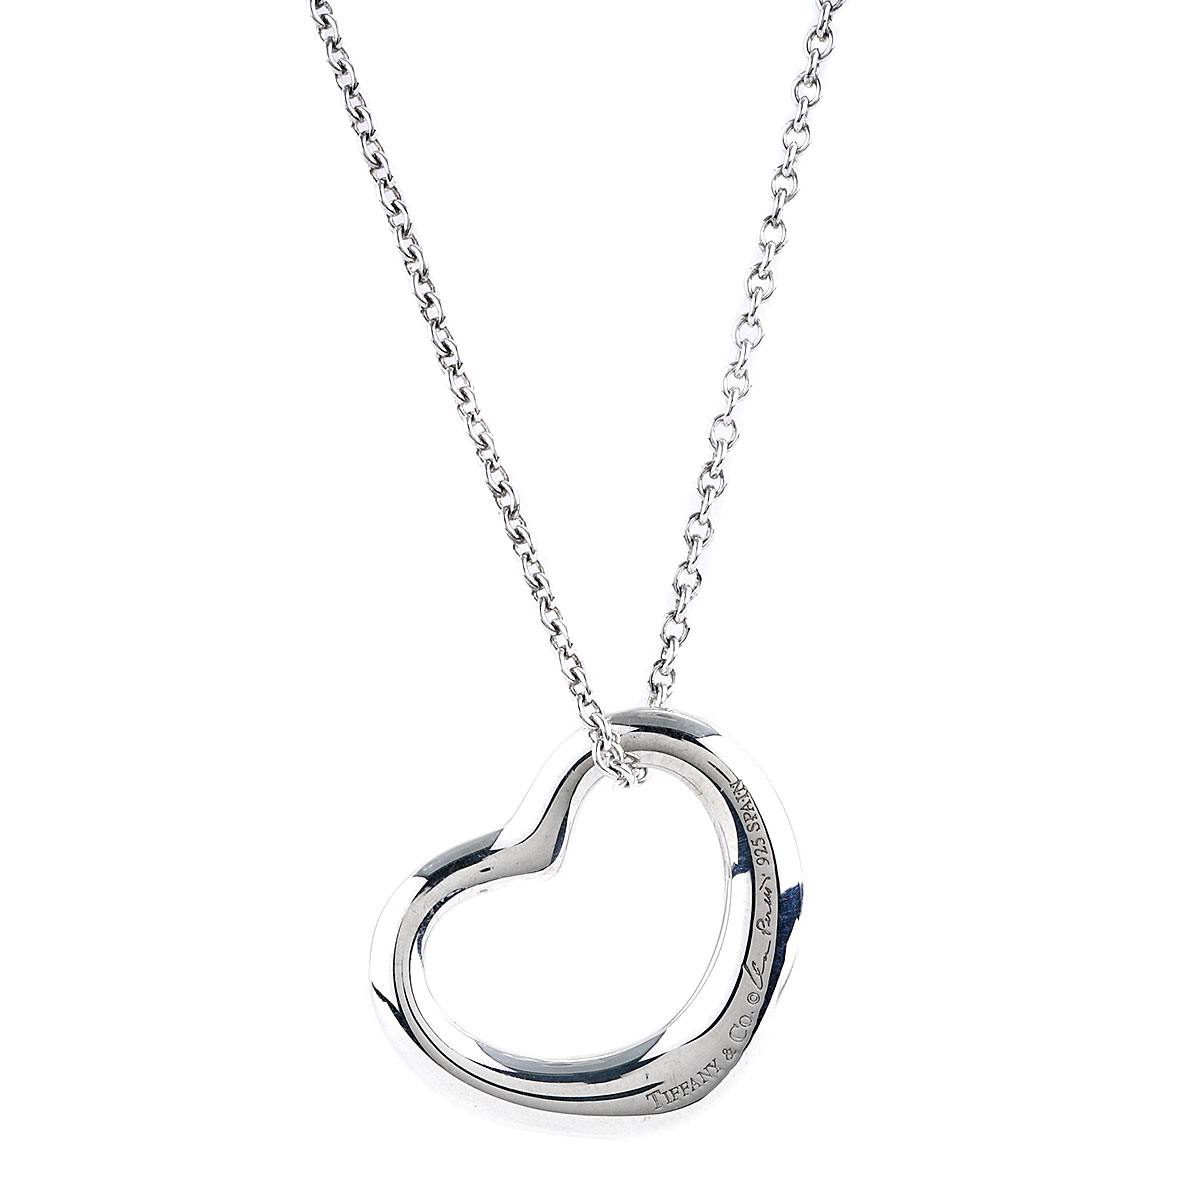 tiffany co elsa peretti open heart necklace in silver small size 22 mm 13922 237